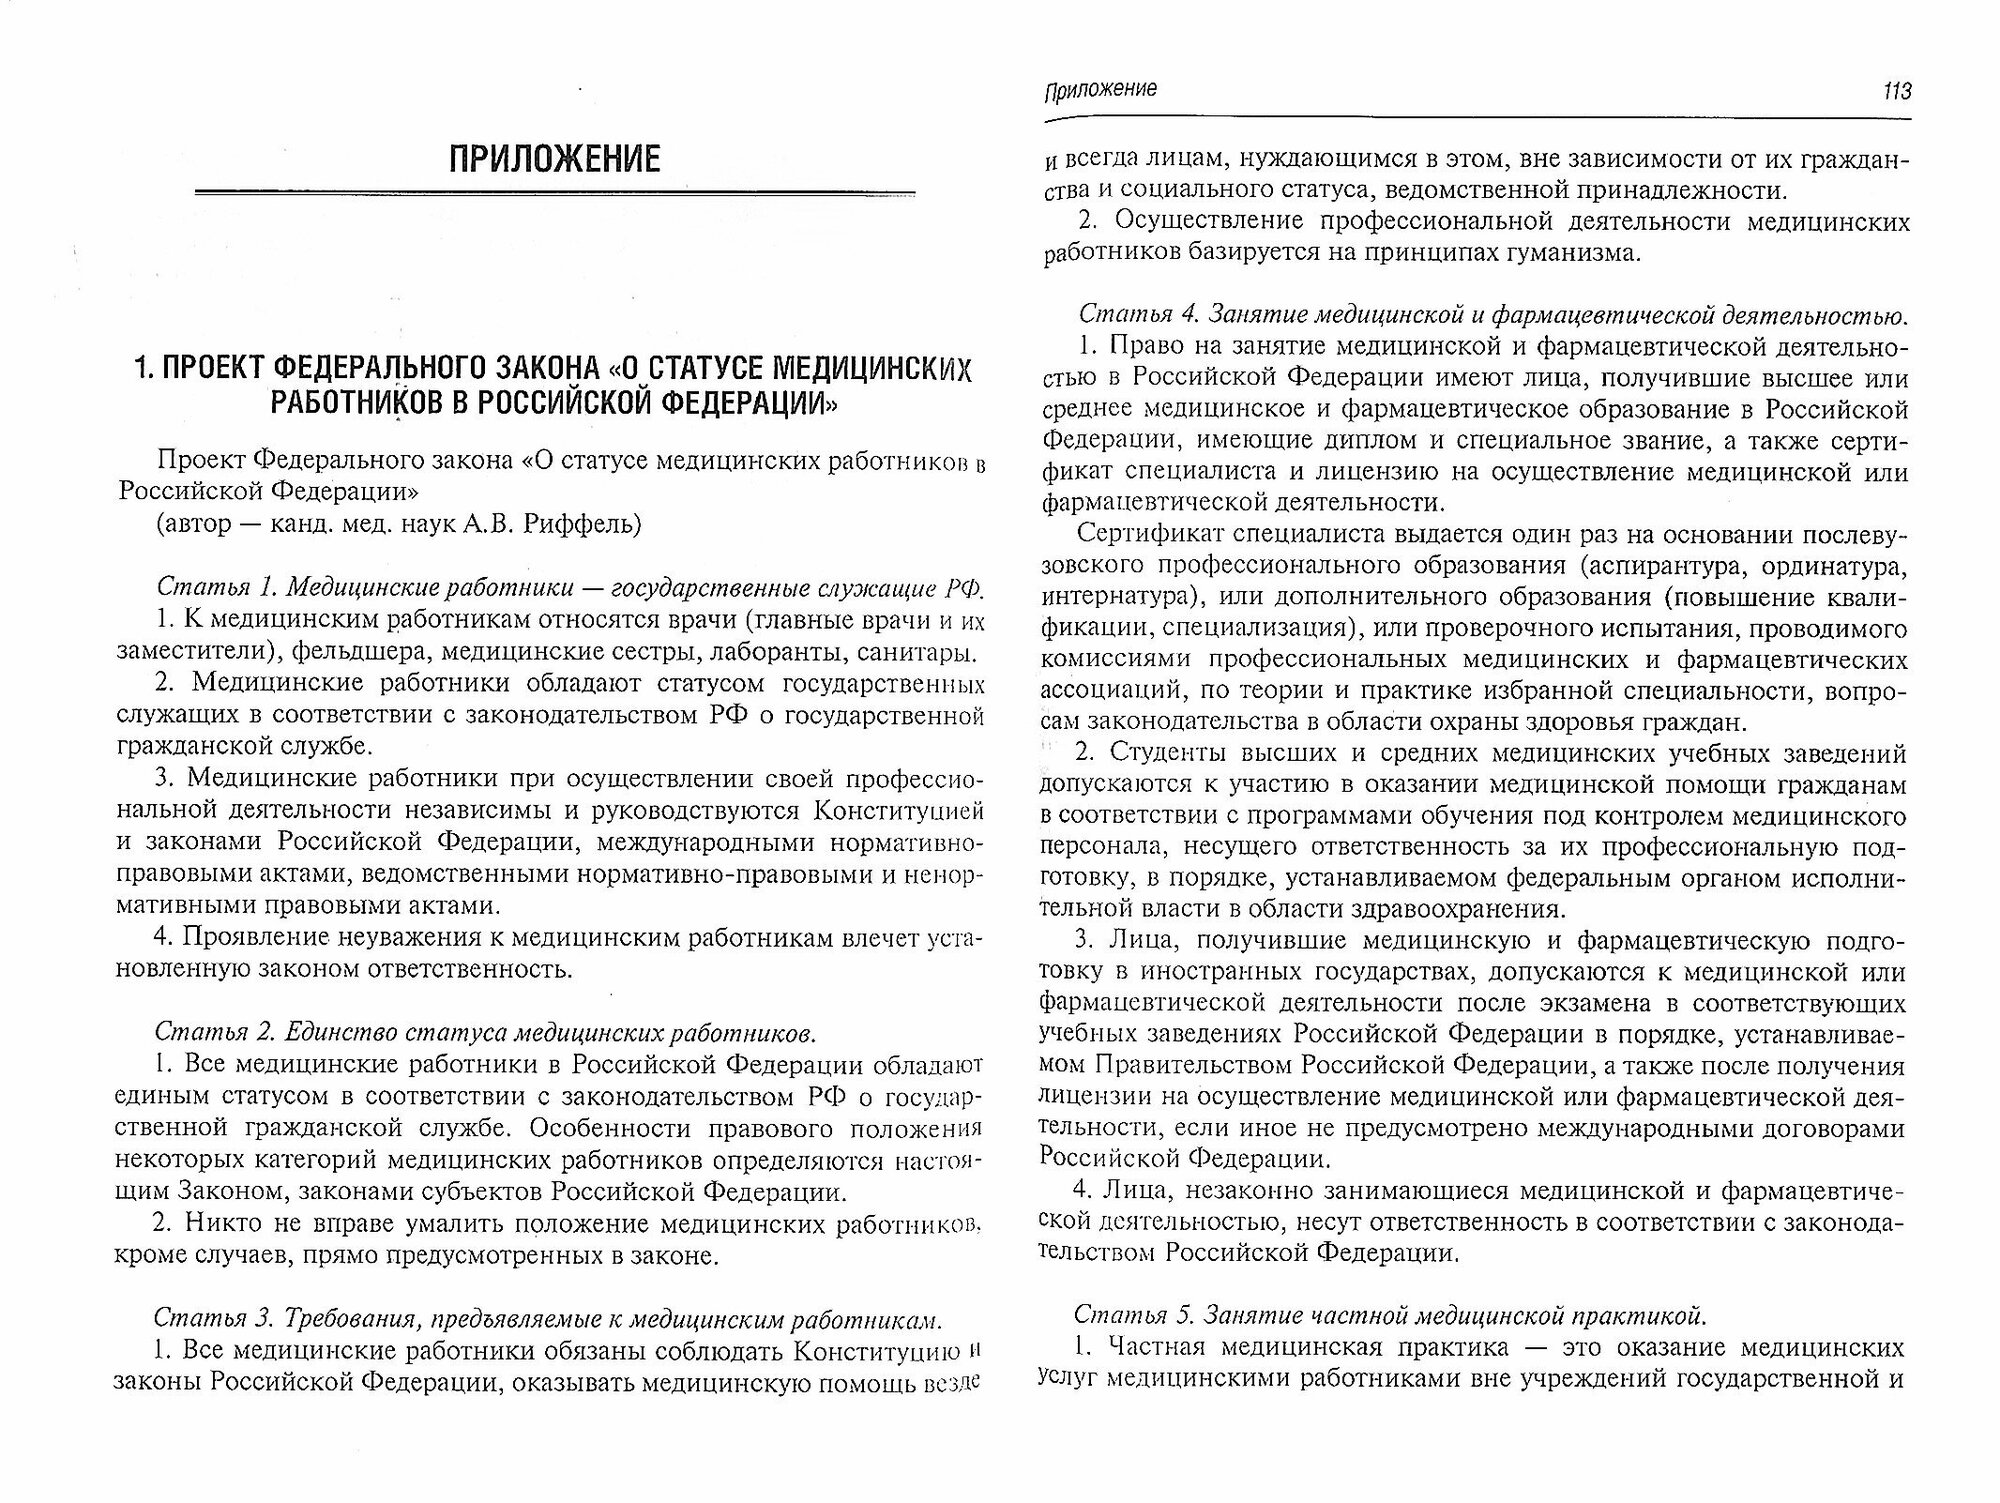 Современные проблемы законодательного регулирования медицинской деятельности в Российской Федерации - фото №3